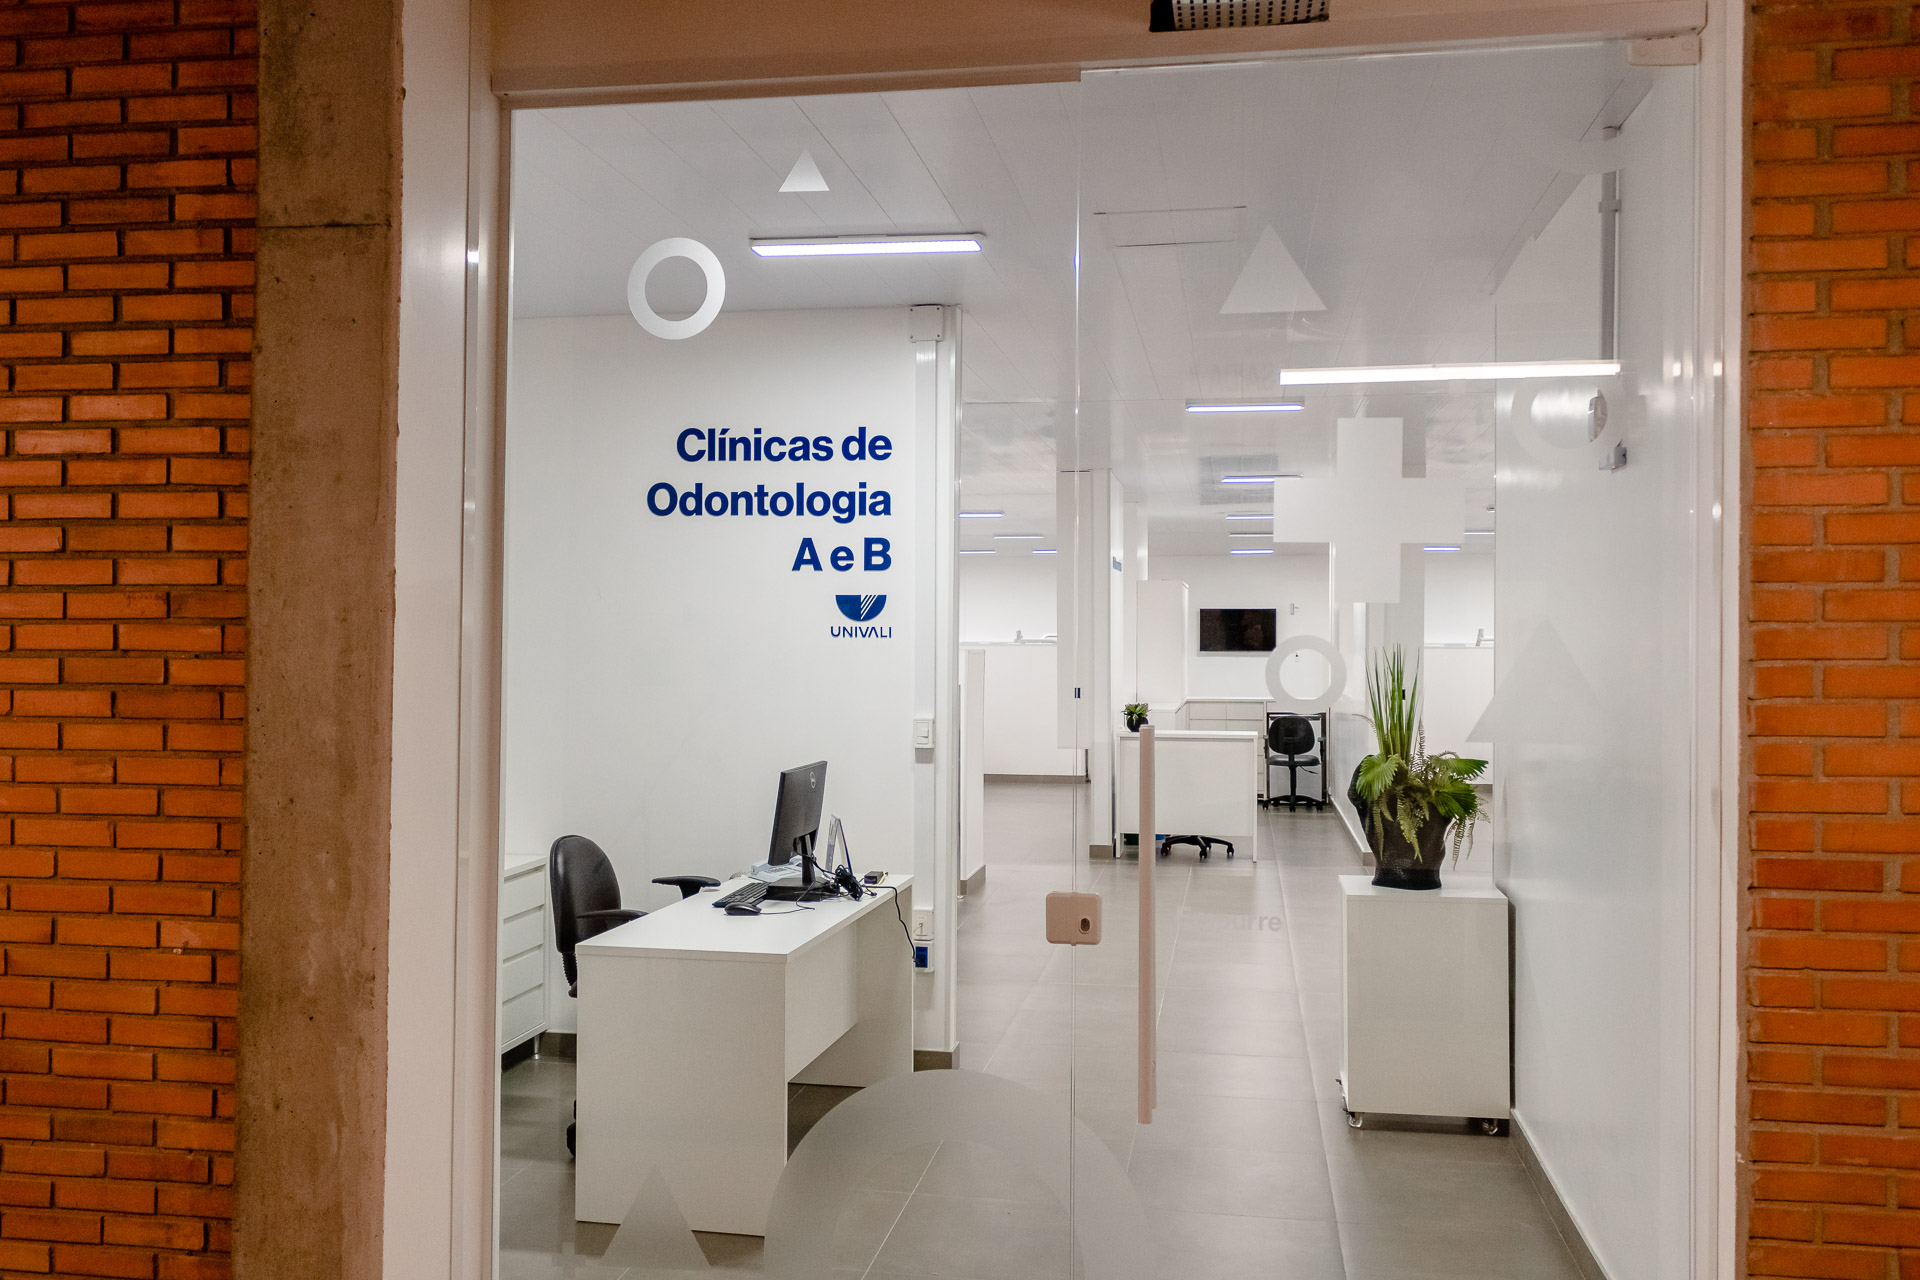 Clinica  AB  Entrada.jpg